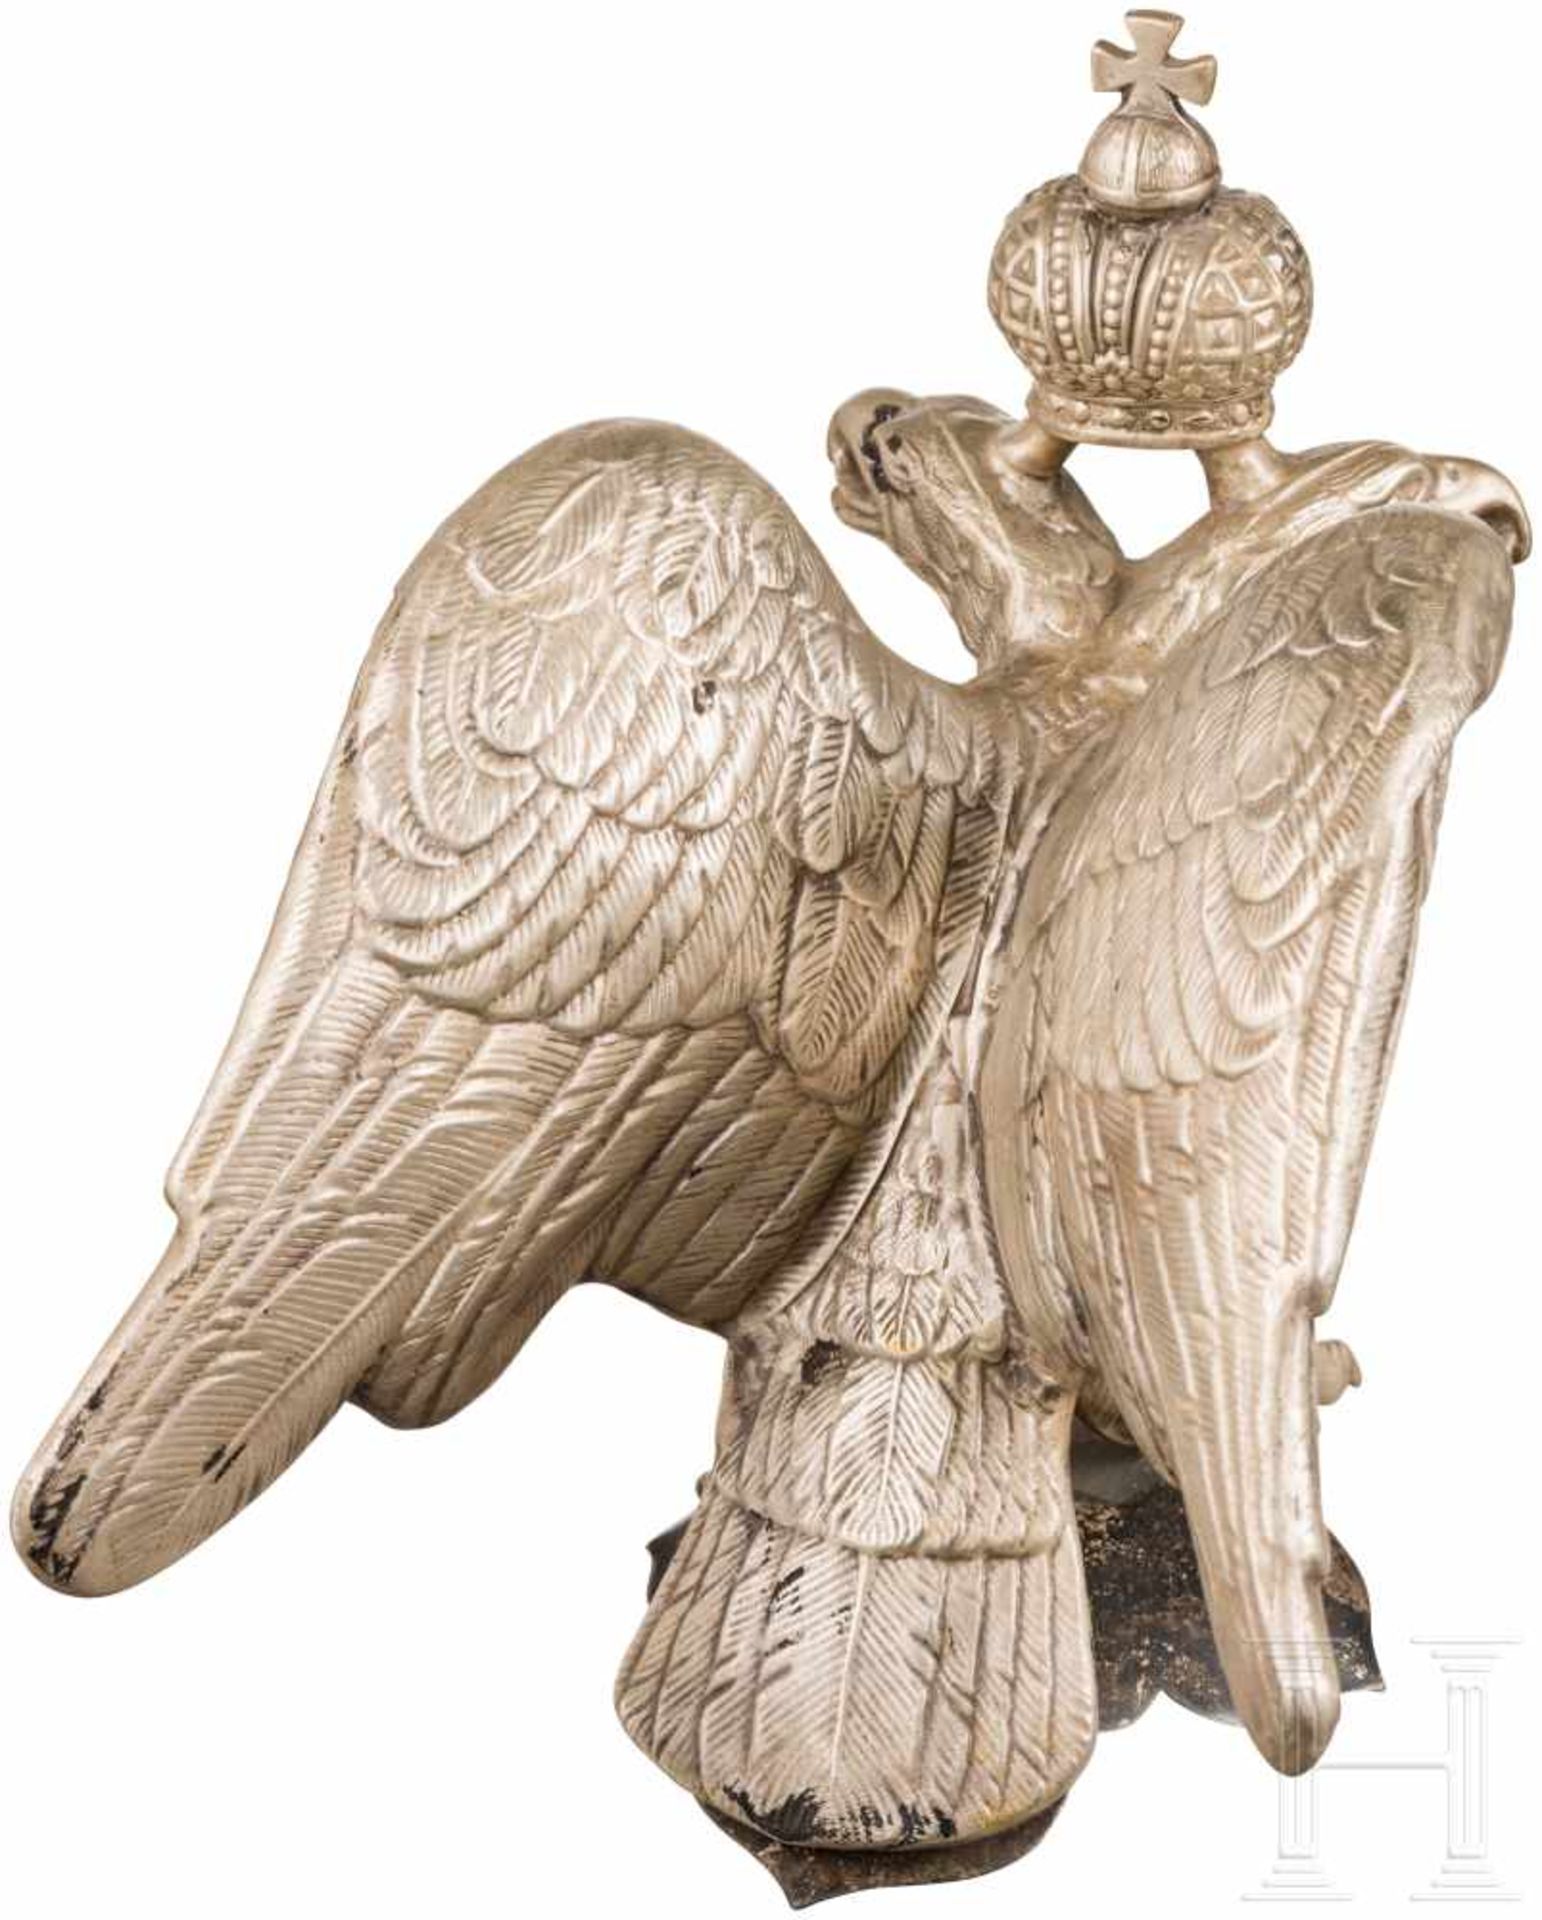 Helmadler der Chevaliergarde des Zaren, um 1900Sammleranfertigung. Paradeaufsatz aus Neusilber ( - Bild 3 aus 3